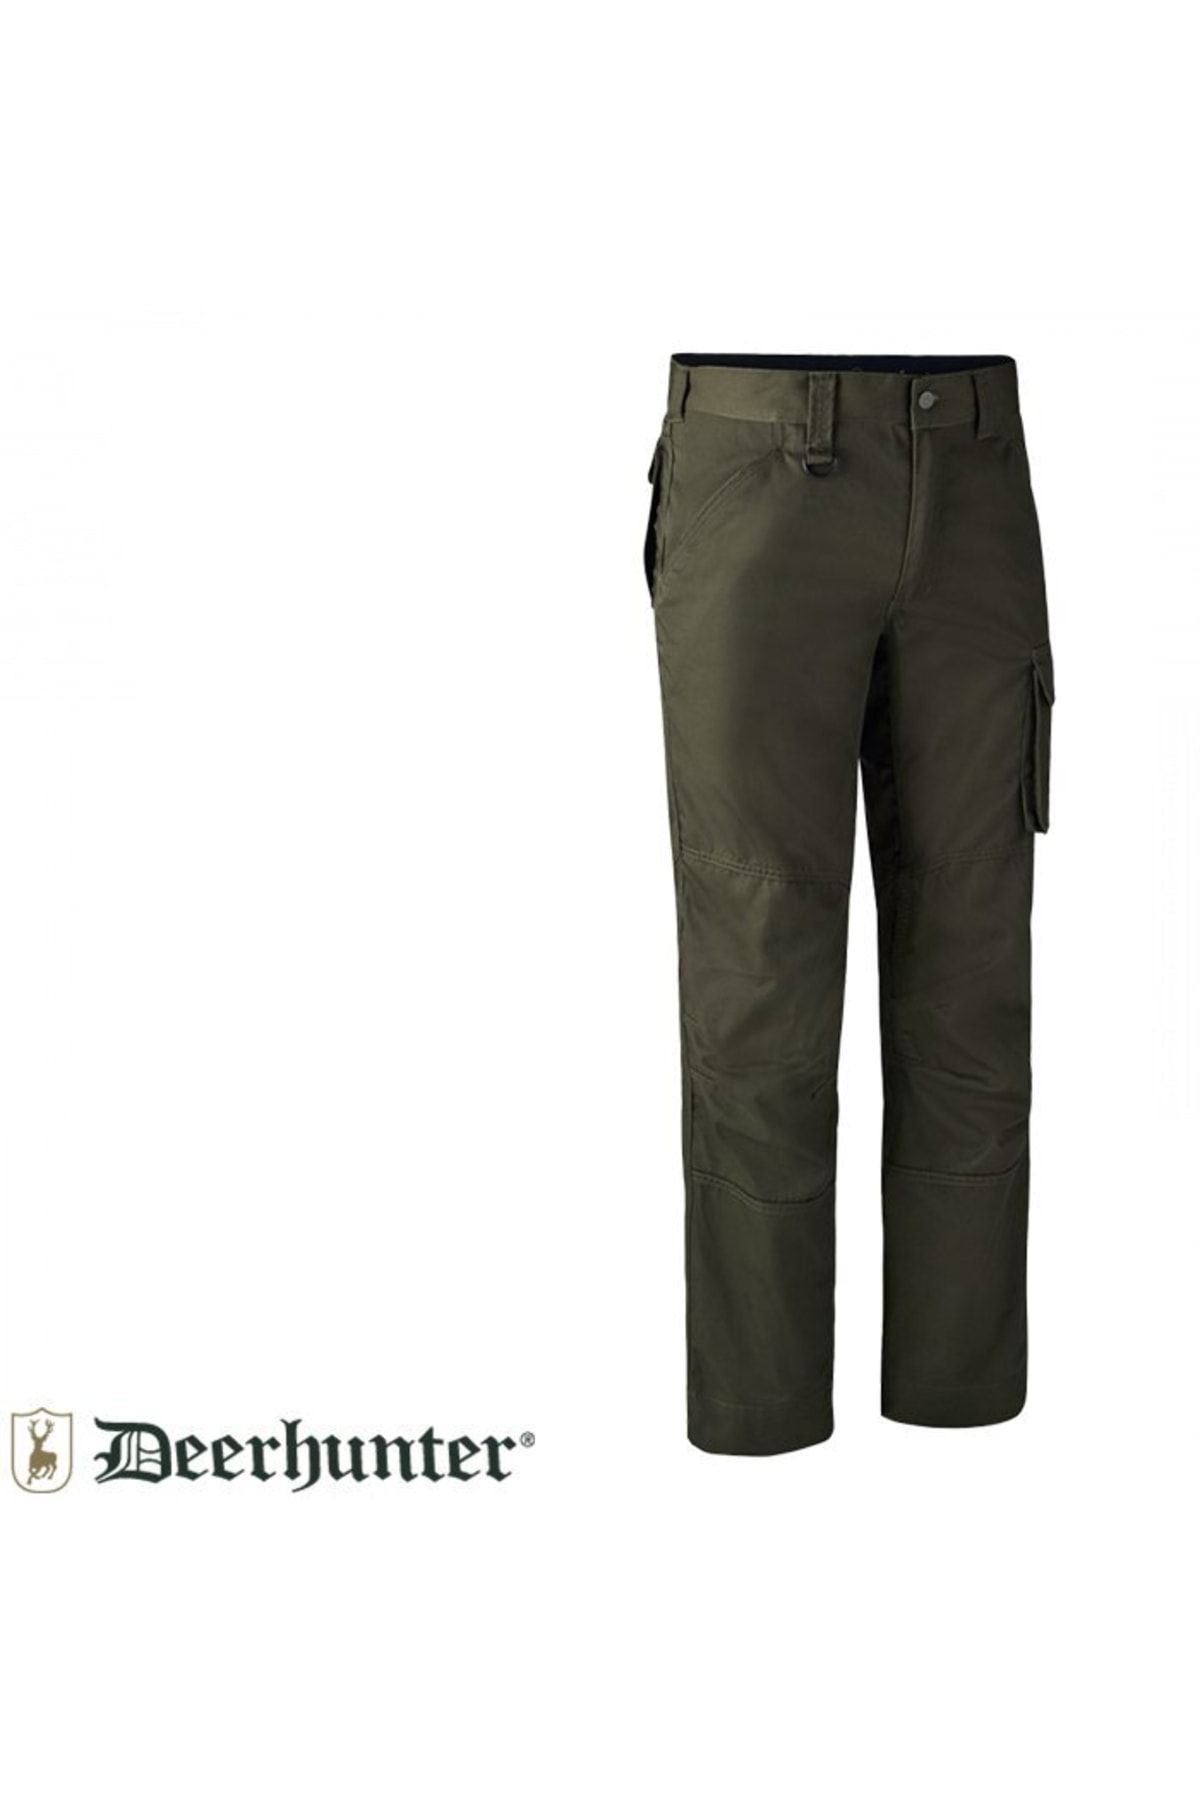 Deerhunter Rogaland 353 Koyu Yeşil Pantolon 56